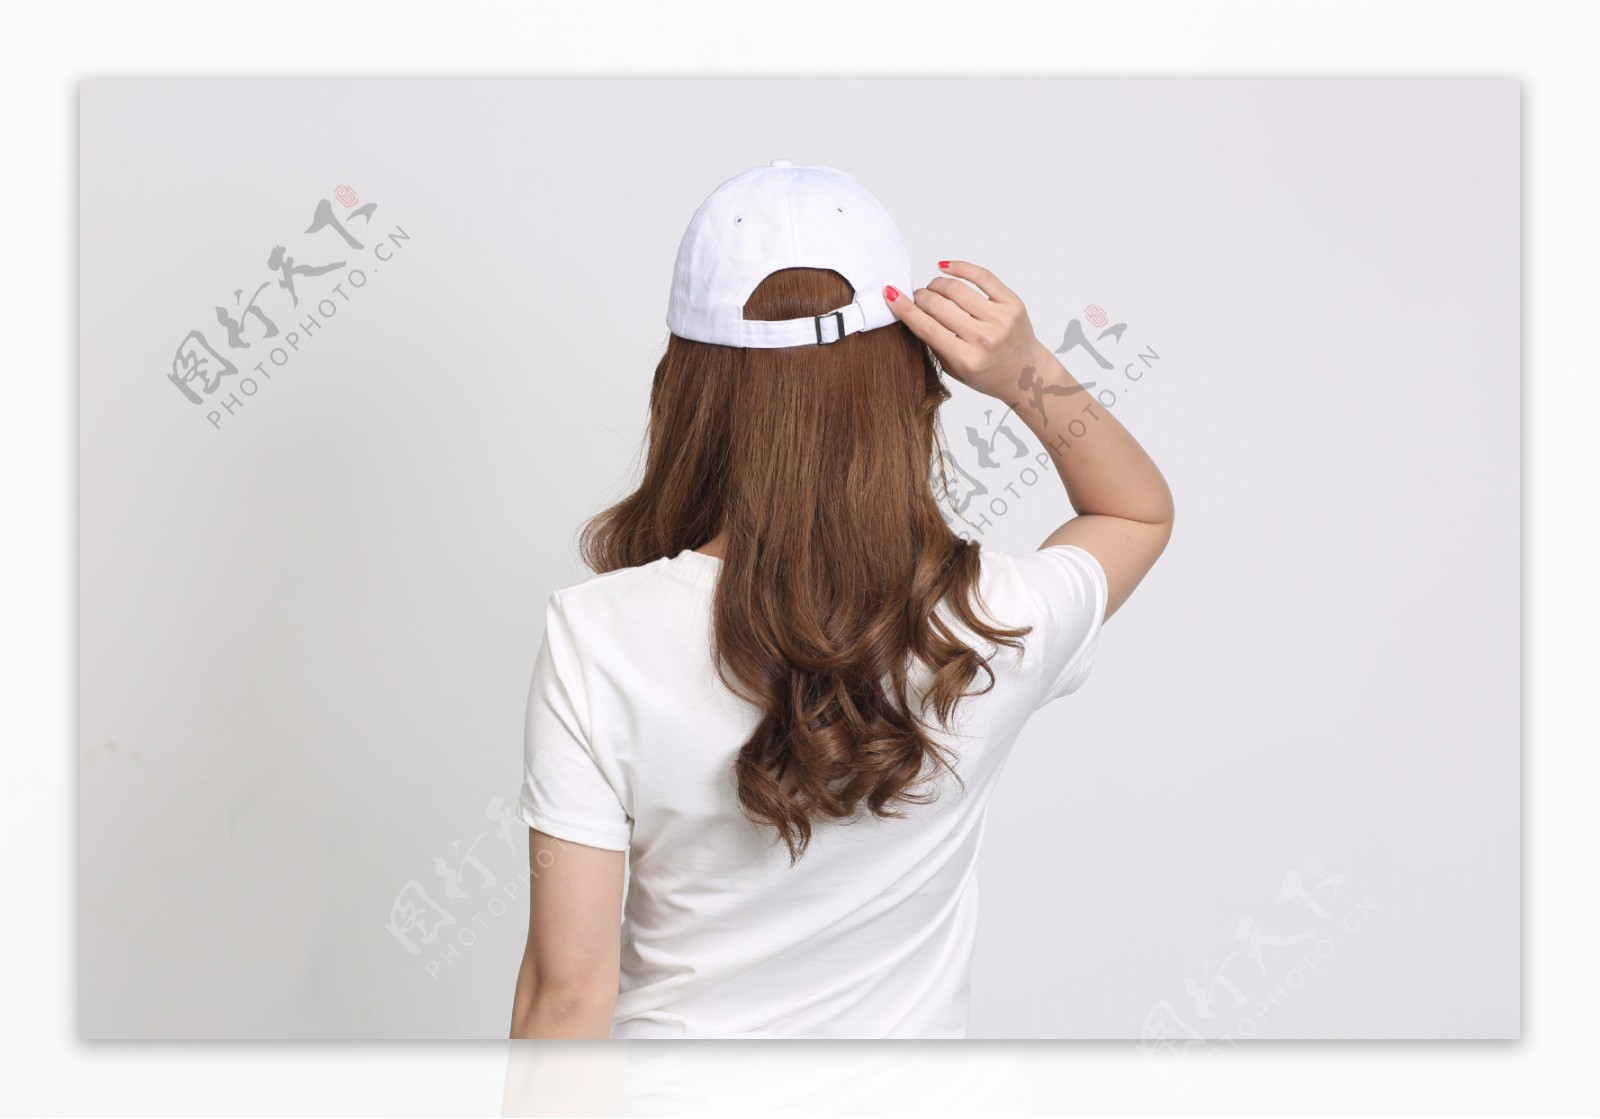 时尚韩版夏天女士棒球帽18